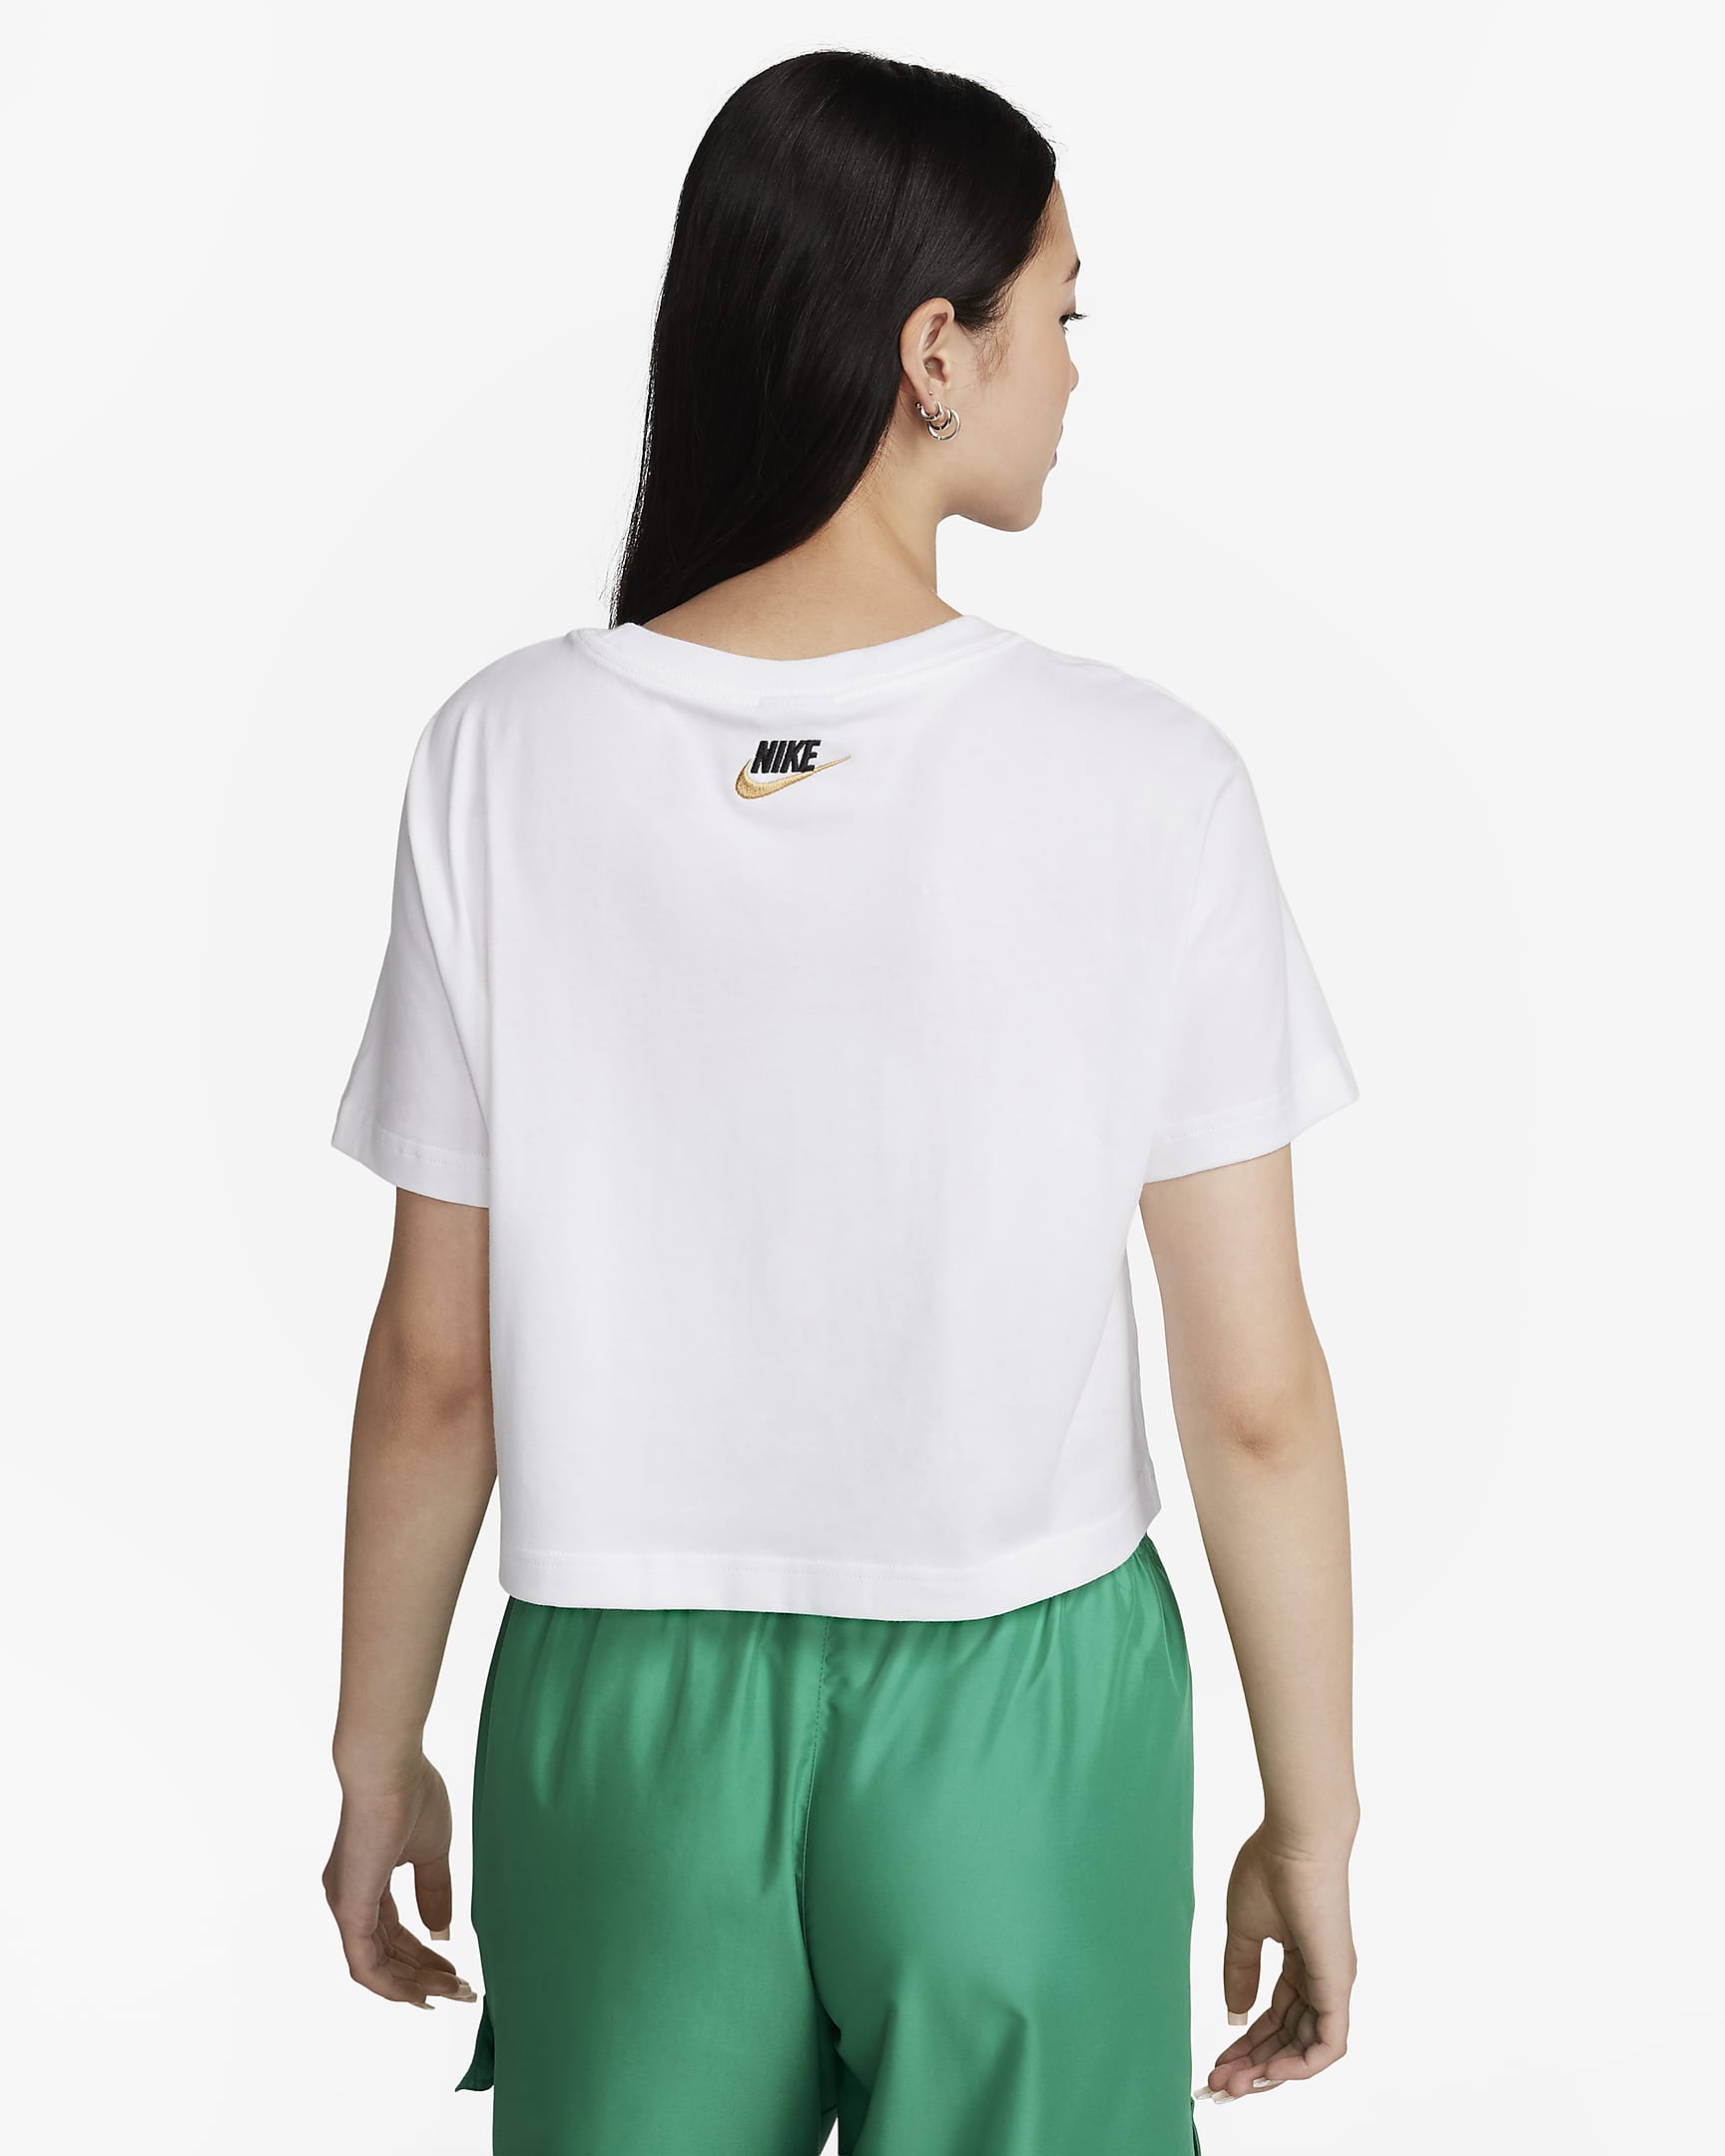 Nike Sportswear Women's Short-Sleeve Crop Top. Nike PH